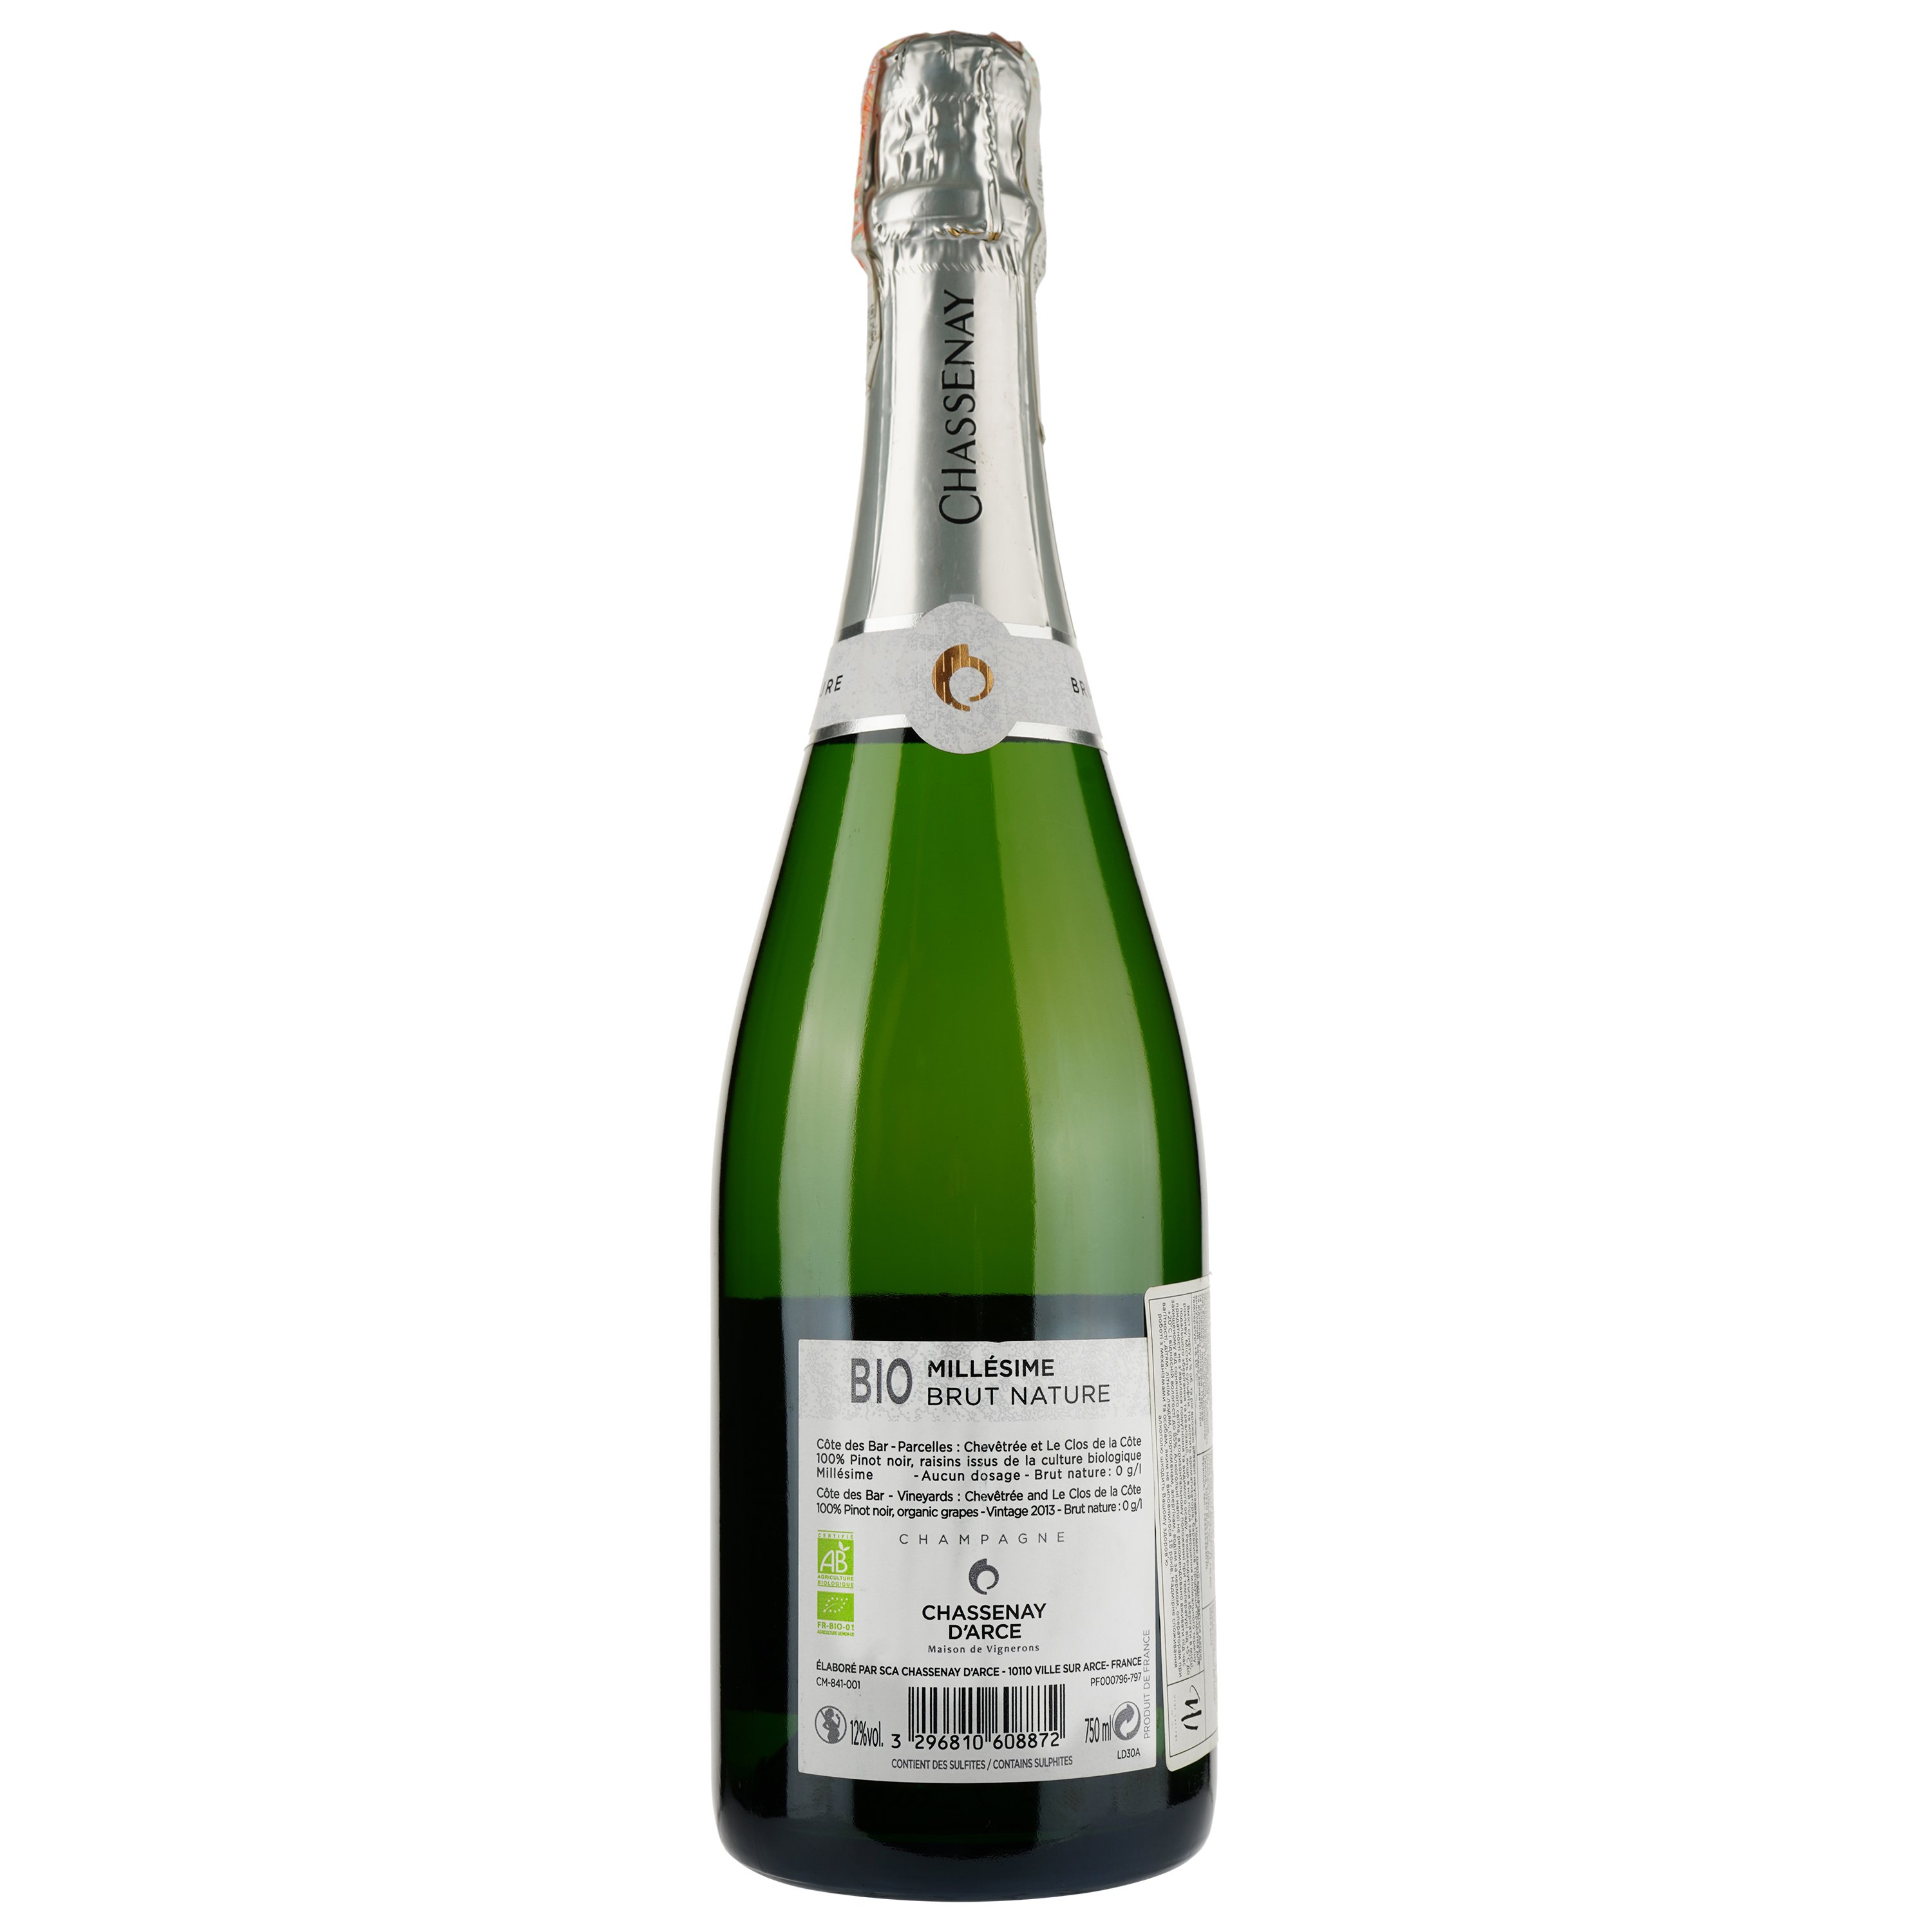 Шампанское Champagne Chassenay d'Arce SCA Champagne Bio Brut Nature 2013, белое, брют натюр, 0,75 л - фото 2